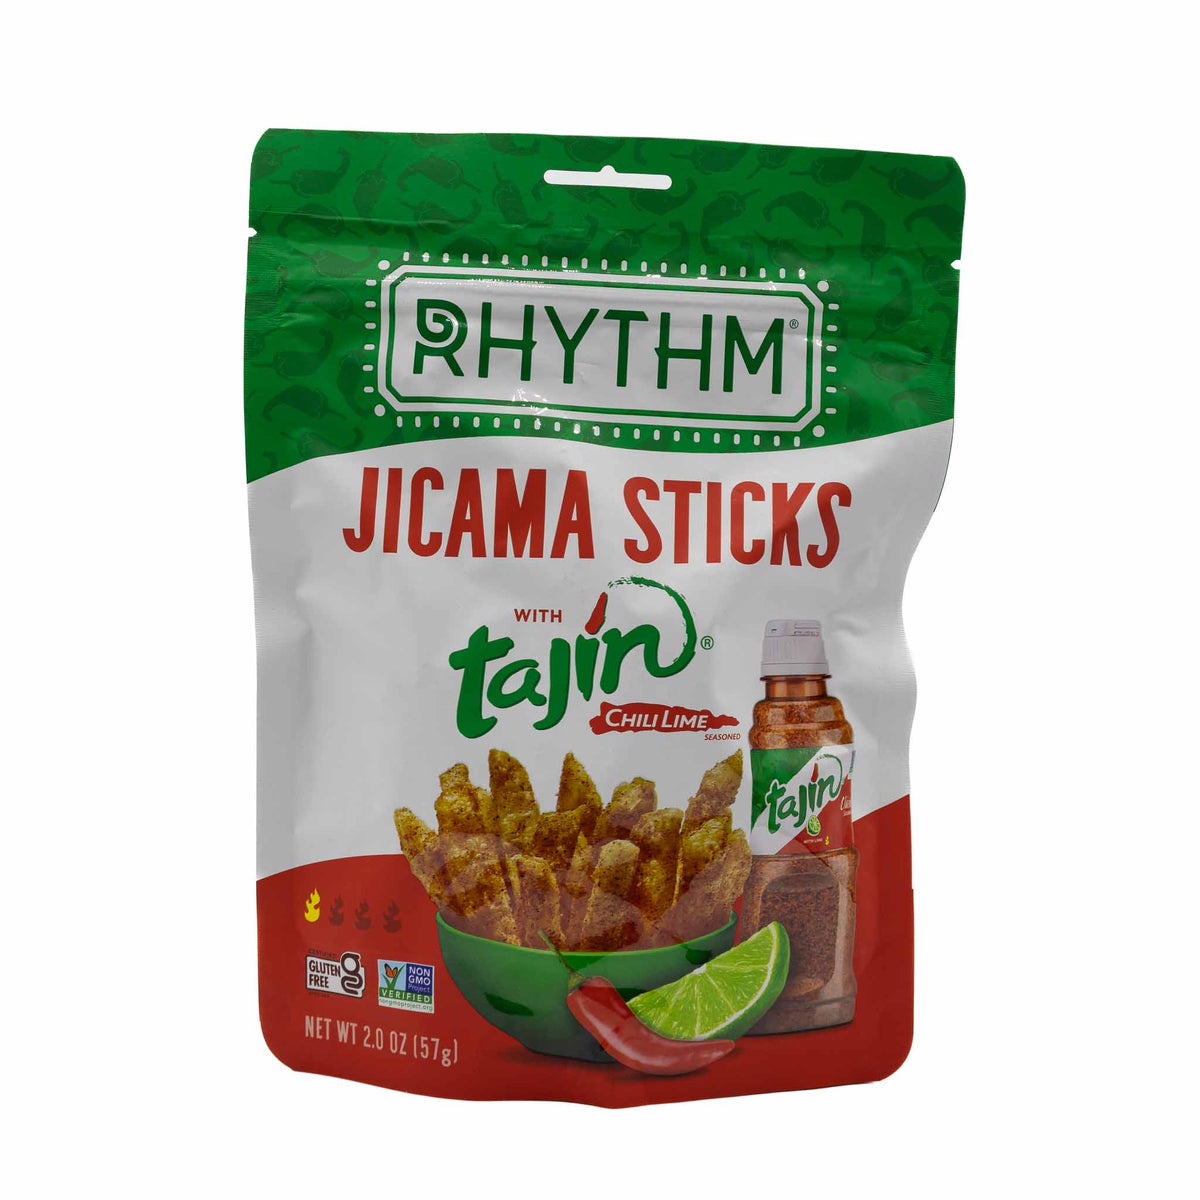 Rhythm Jicama Sticks Chili Lime